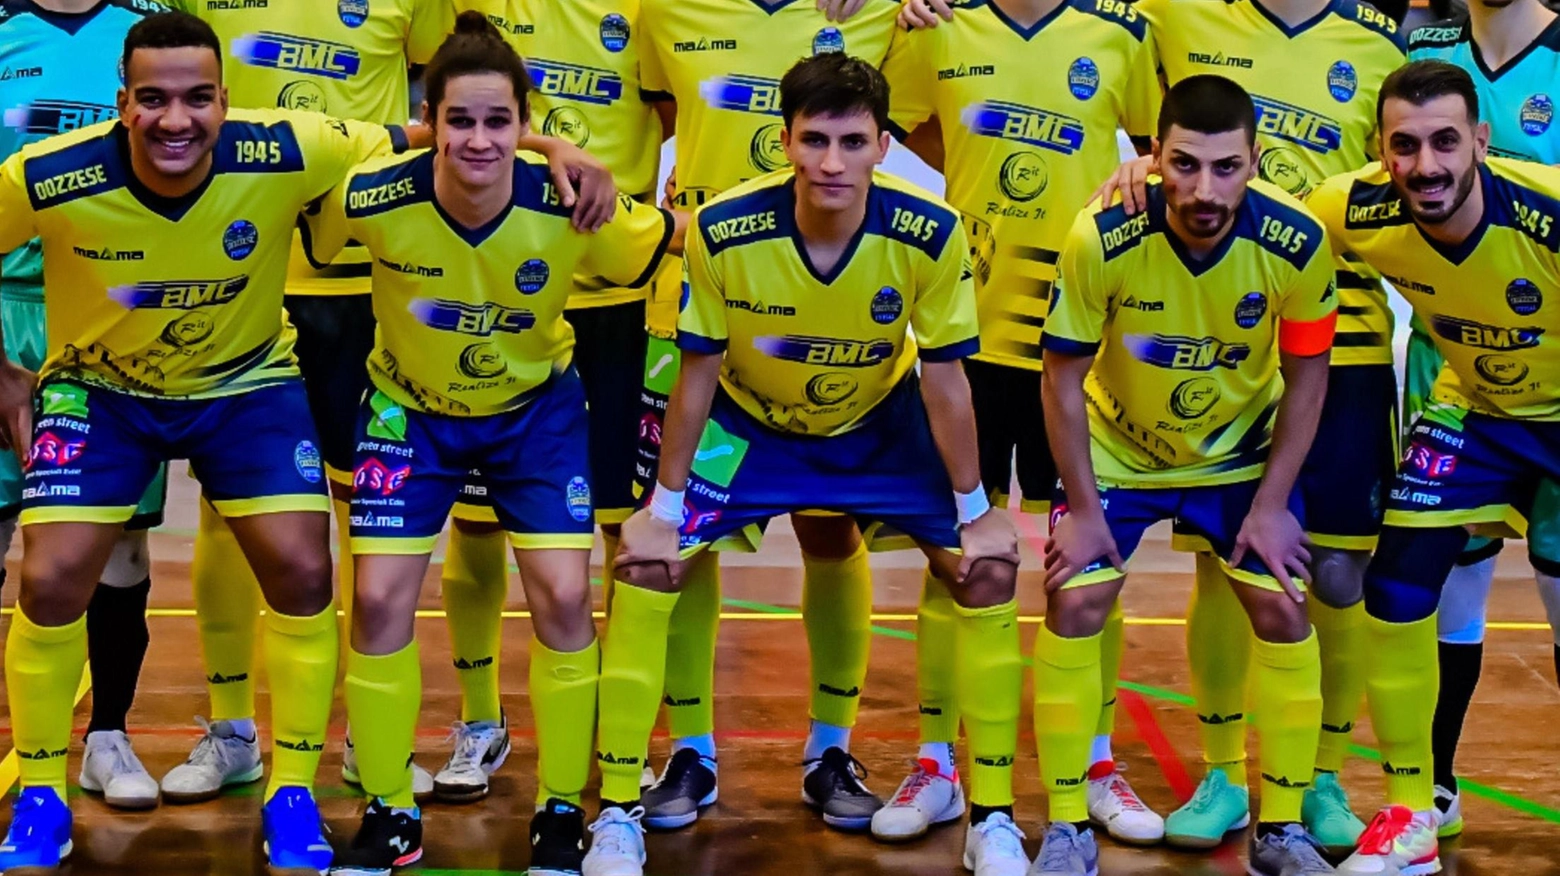 Futsal A2 Dopo un ottimo avvio, il team gialloblù è incappato in una serie di ko. Il mister: "Ci sono state delle fratture all’interno del gruppo, dobbiamo lavorare sodo".